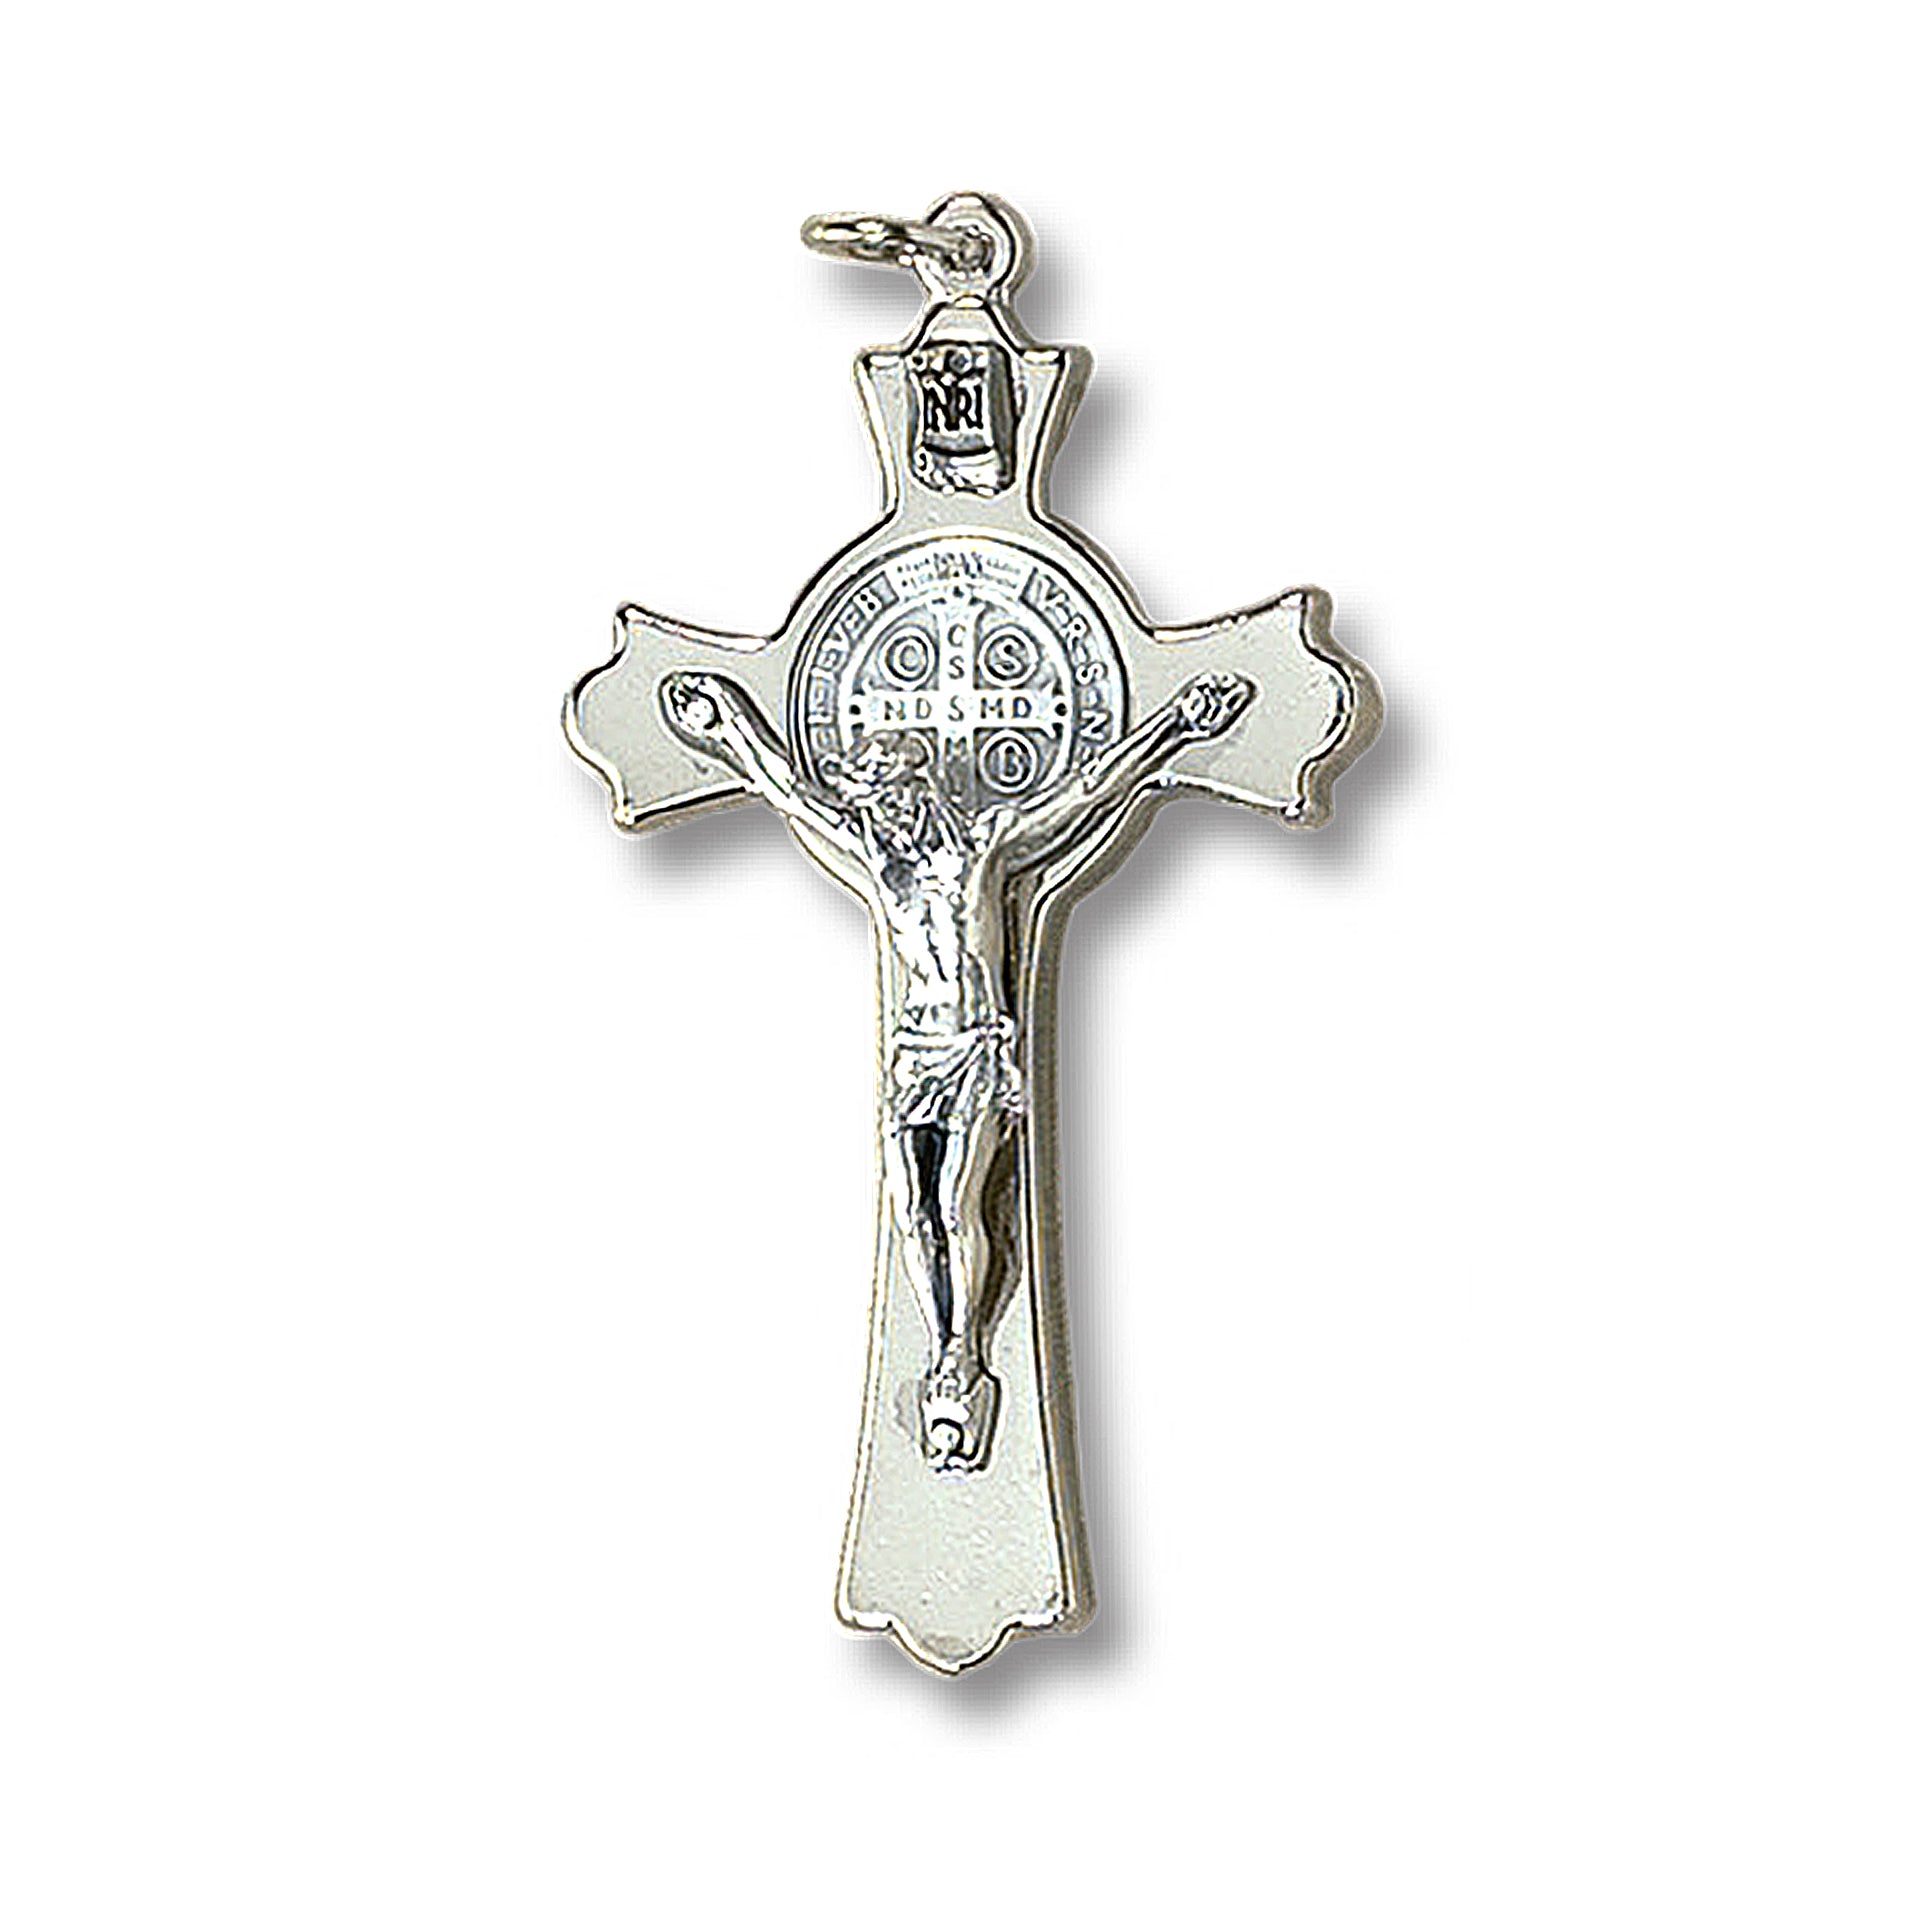 Croce di San Benedetto in metallo argentato – San Benedetto Collections LLC.